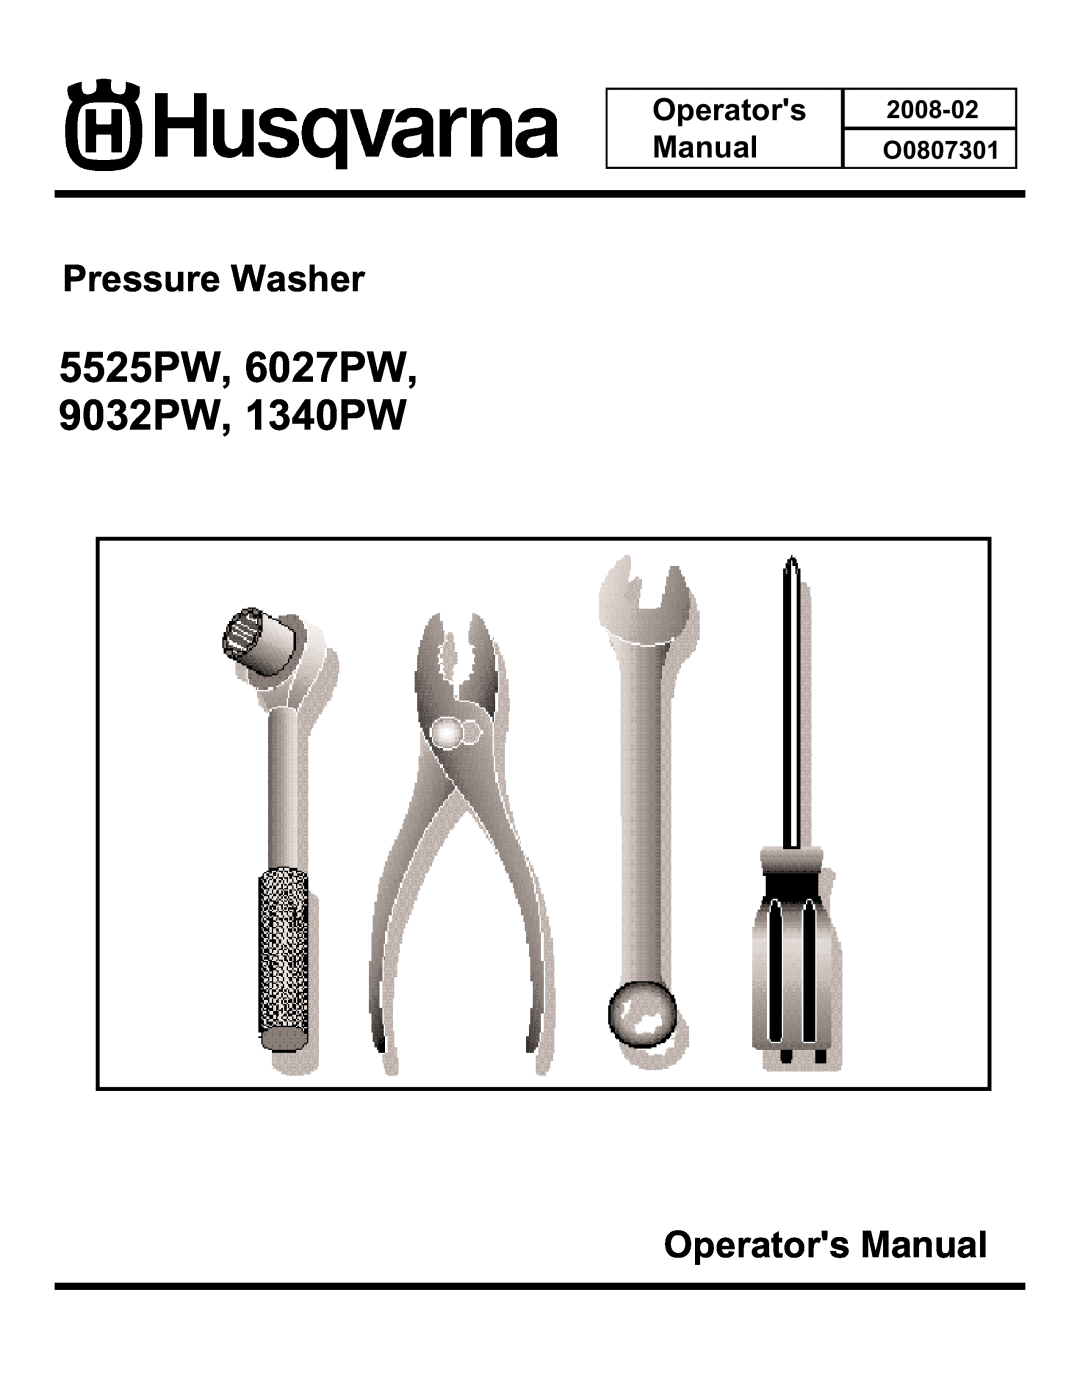 Husqvarna manual Operators Manual, 5525PW, 6027PW 9032PW, 1340PW, Pressure Washer, 2008-02 O0807301 